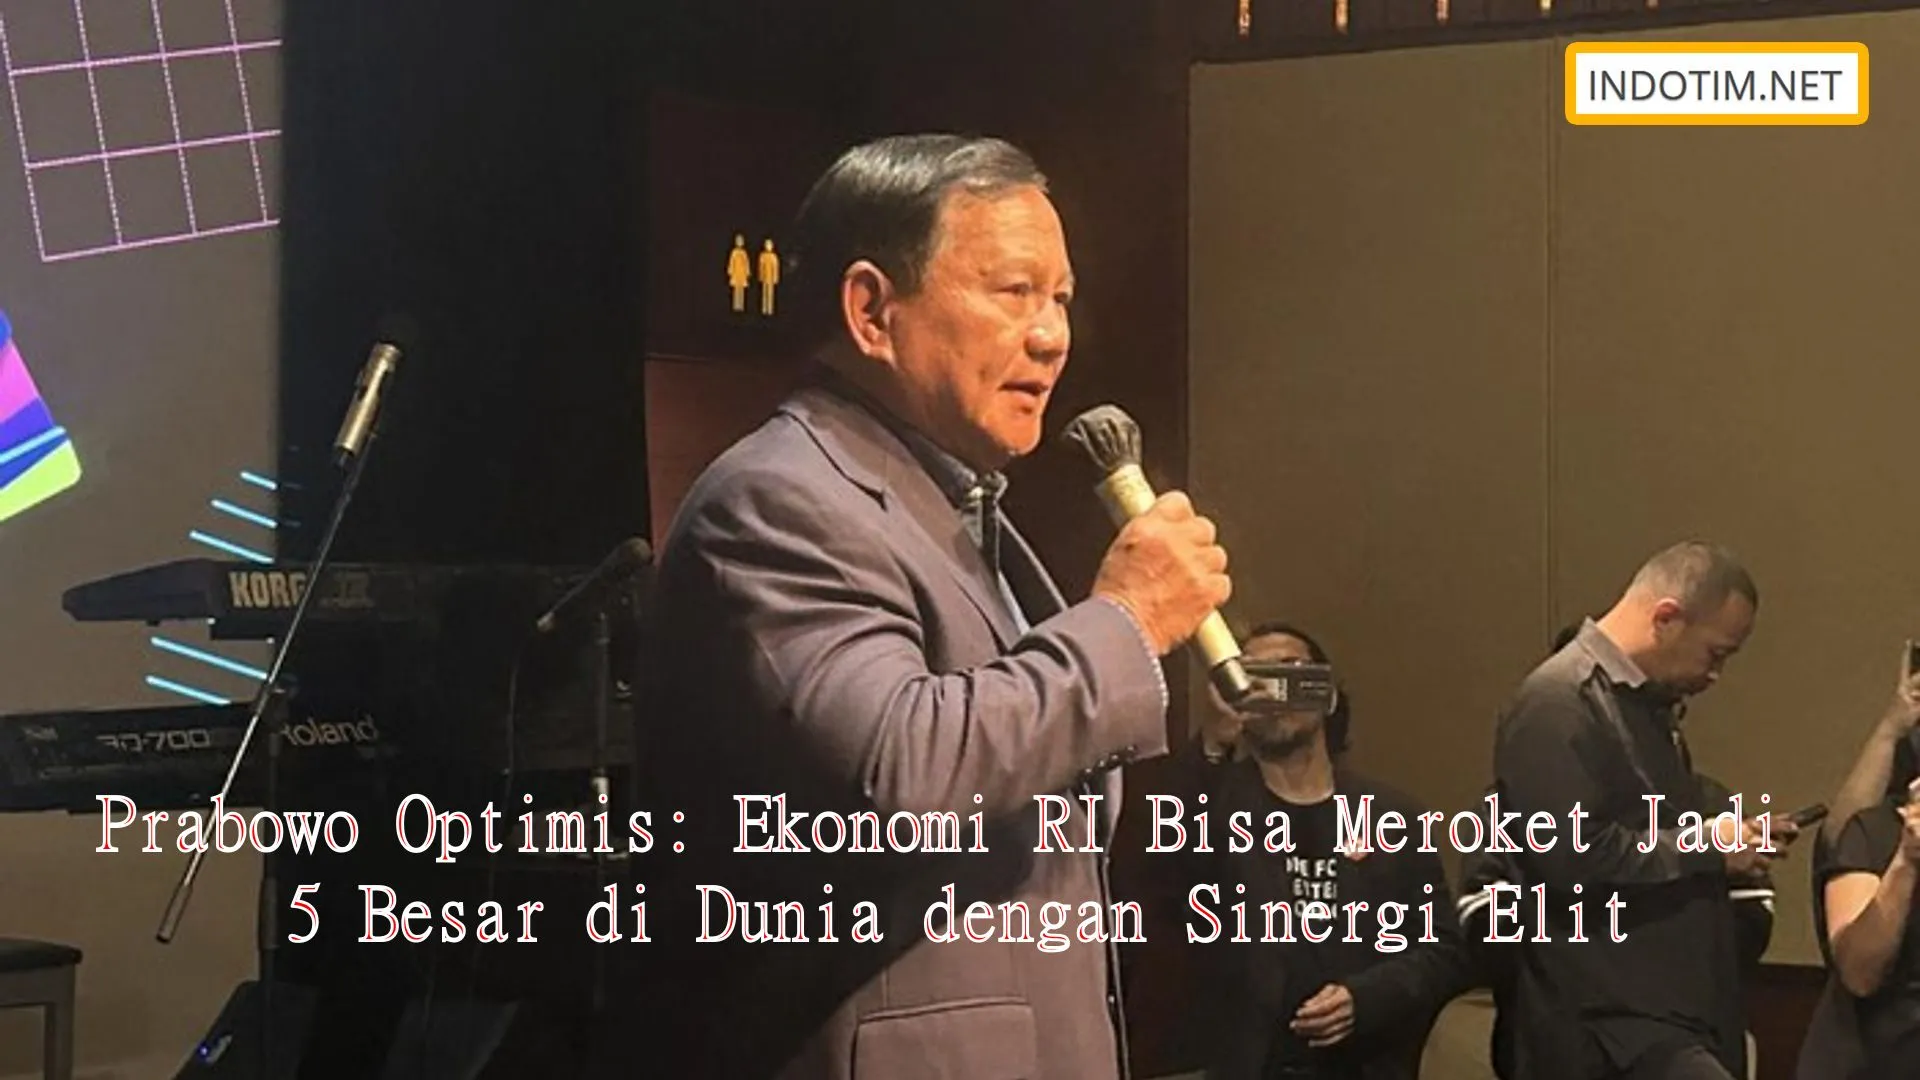 Prabowo Optimis: Ekonomi RI Bisa Meroket Jadi 5 Besar di Dunia dengan Sinergi Elit